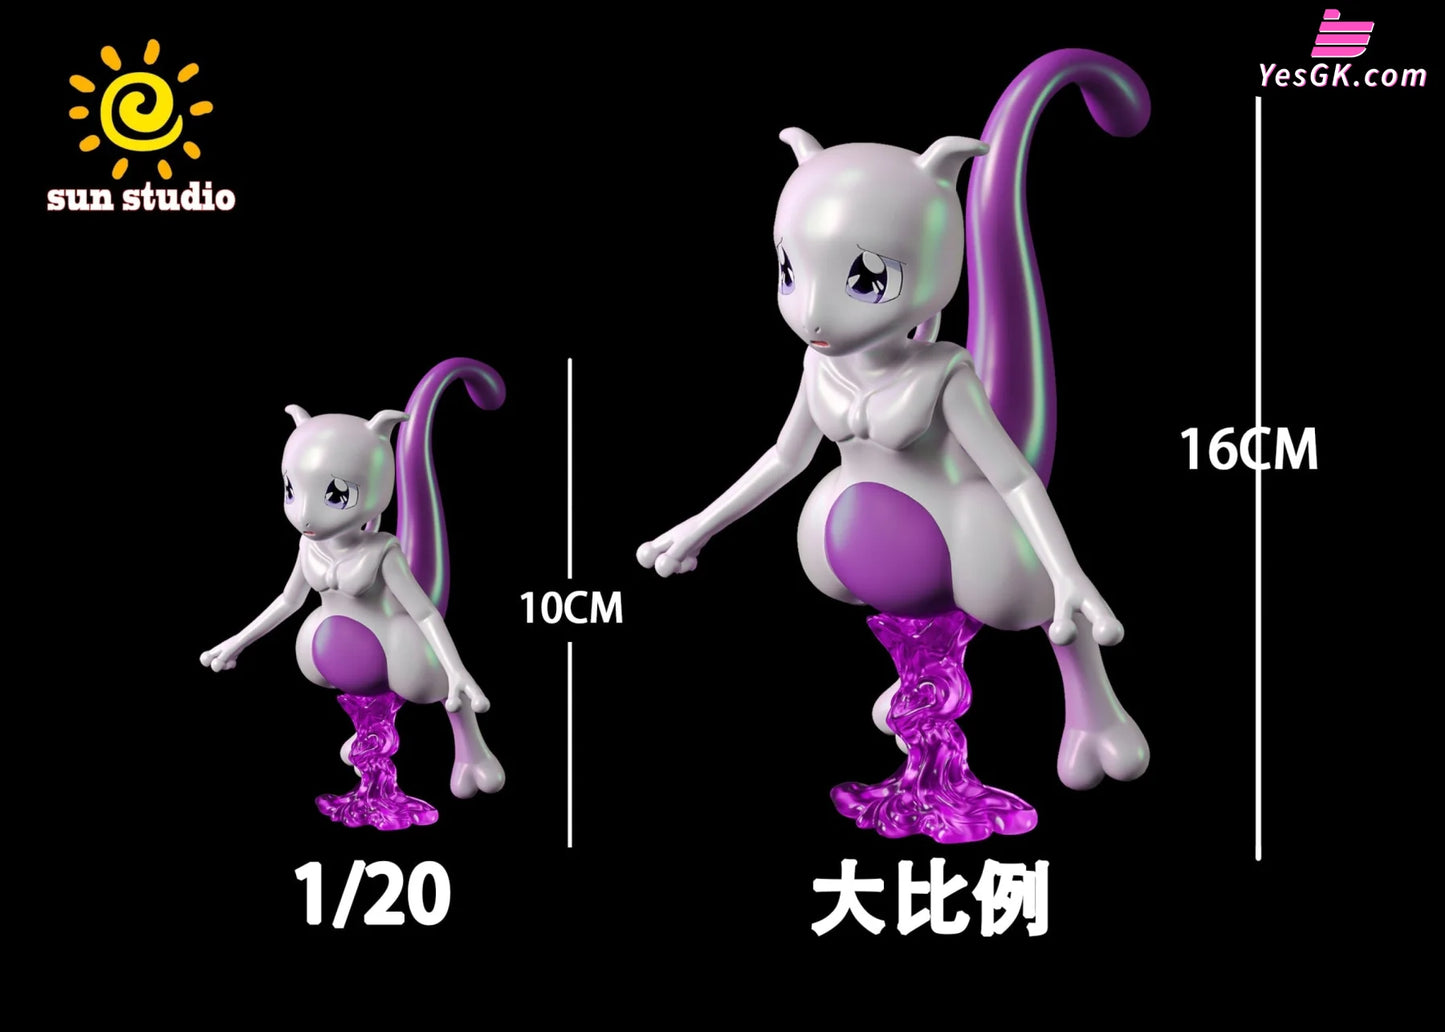 DM x NGZ Studio Pokemon 1/20 Pokedex Series Mewtwo